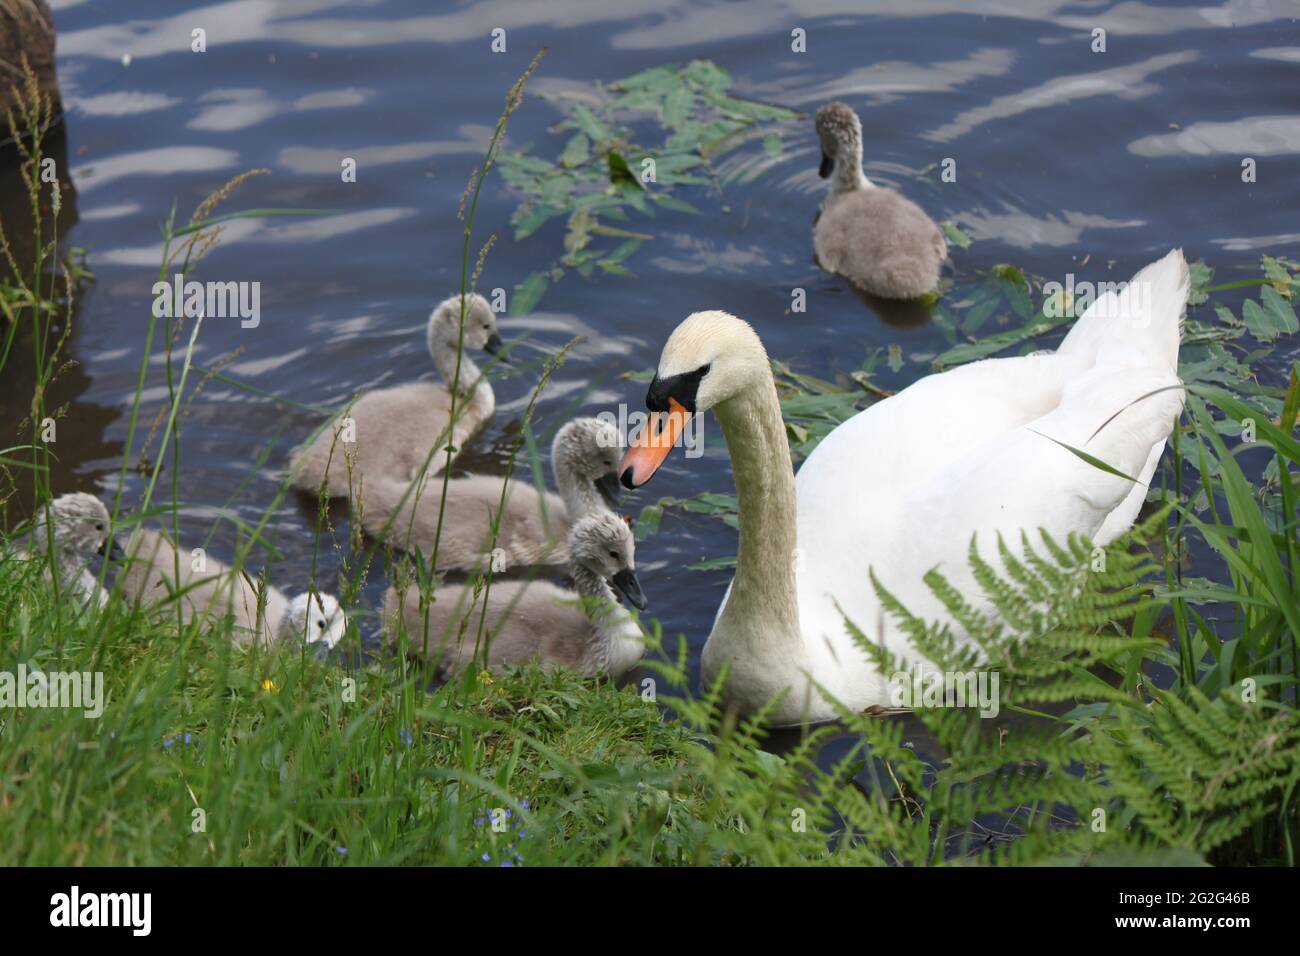 Mute el cisne y los cygnets nadando en la orilla del lago. Parques públicos, vida silvestre escocesa y temporada de cría de cisnes. Foto de stock